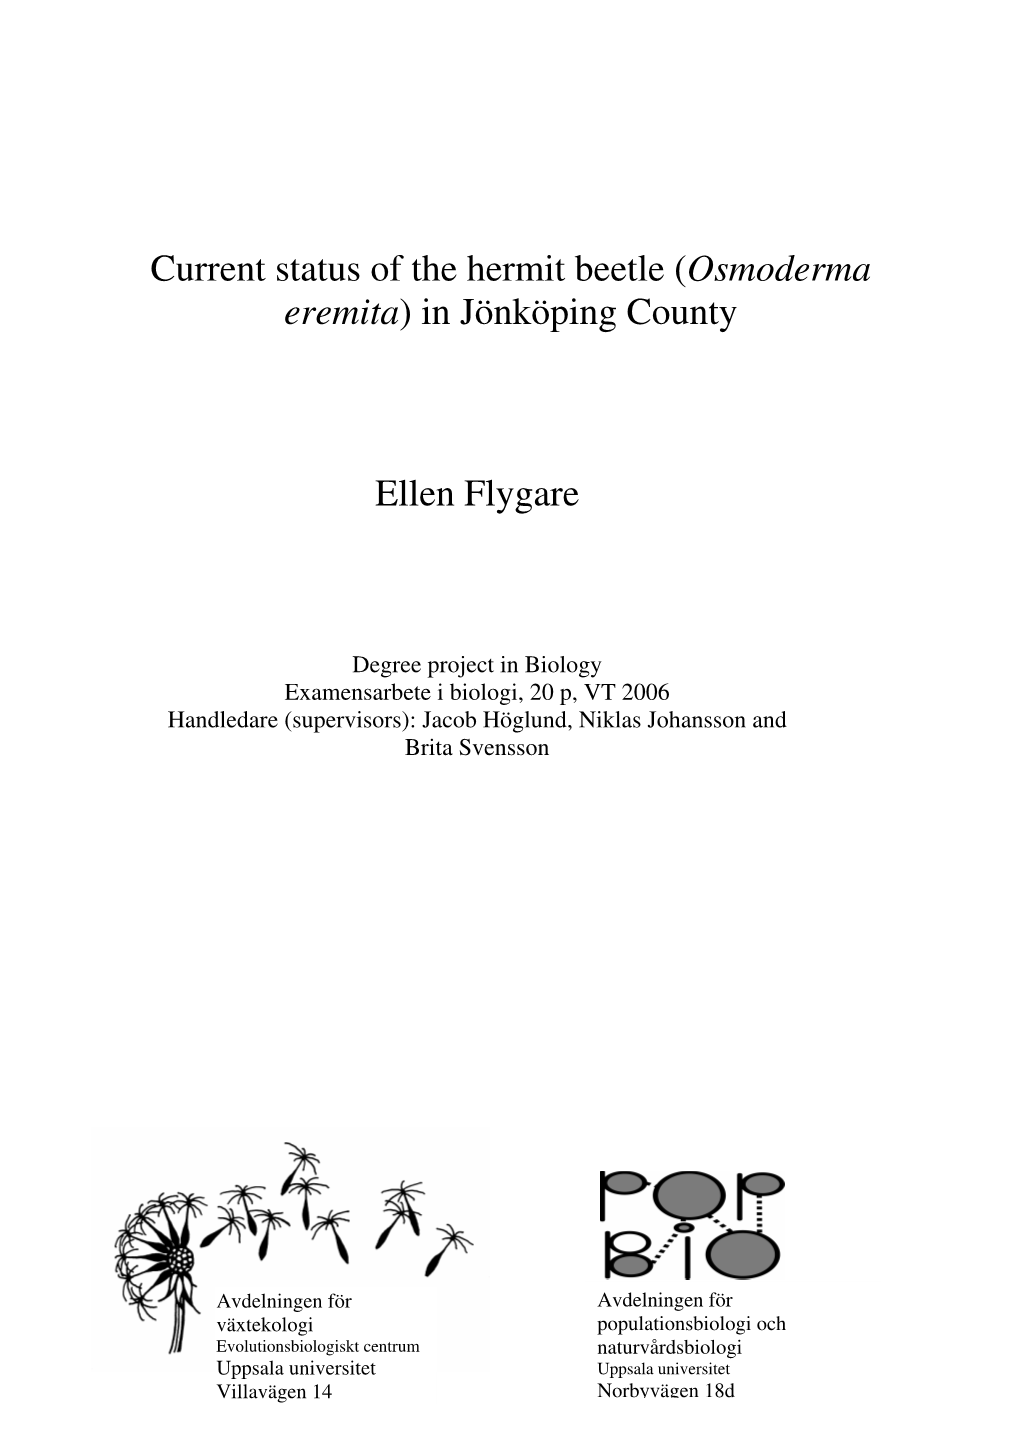 Current Status of the Hermit Beetle (Osmoderma Eremita) in Jönköping